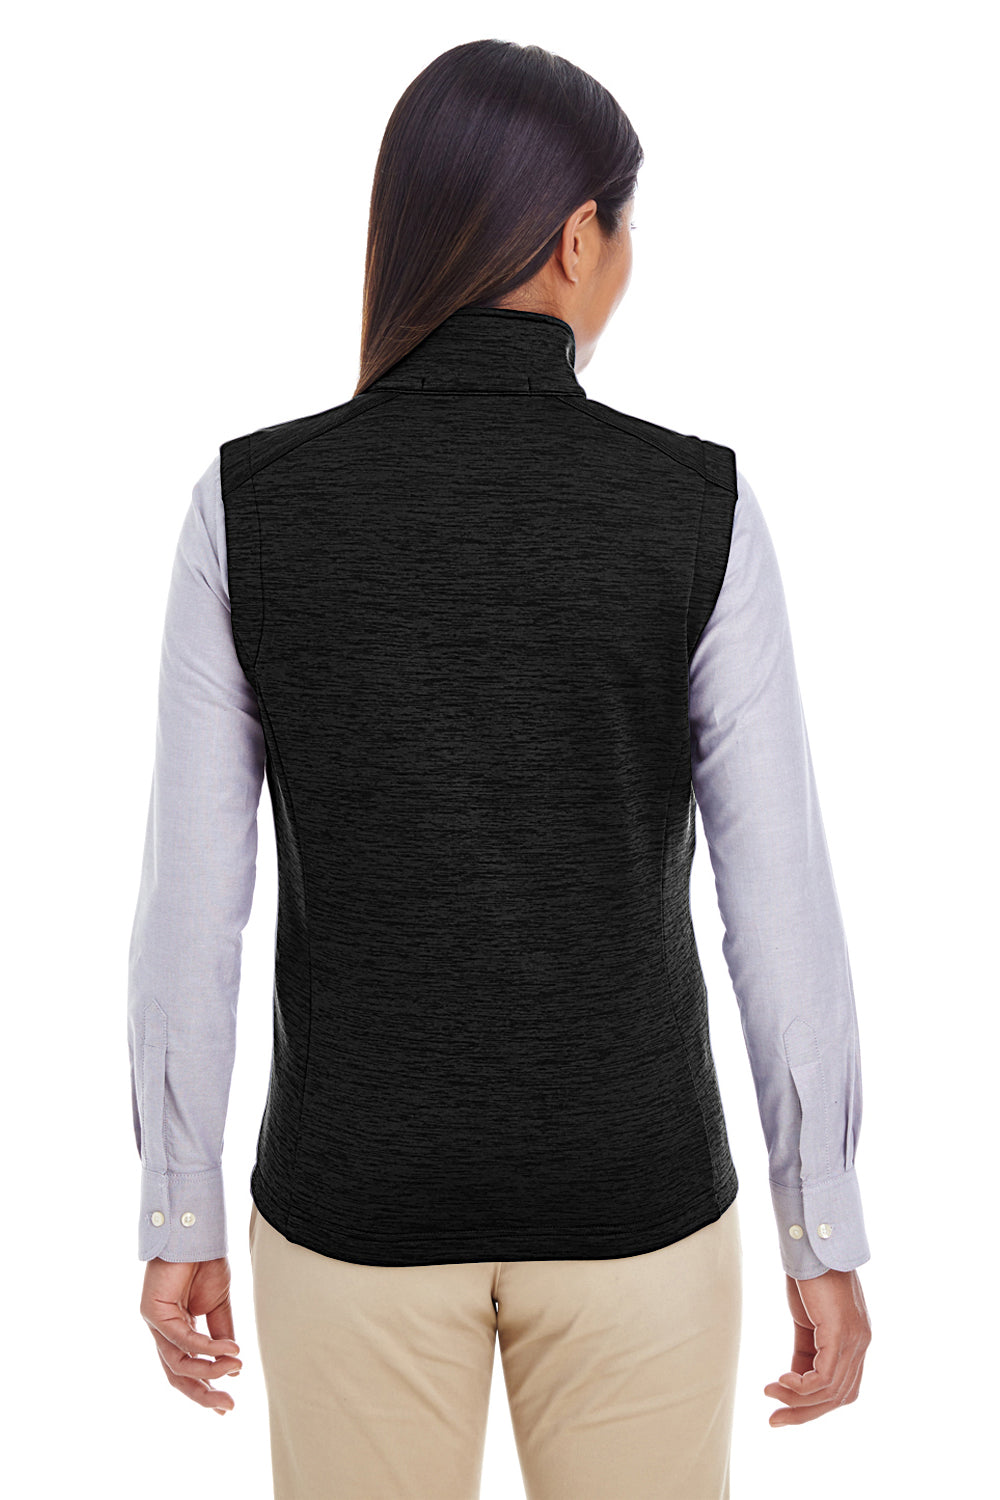 Devon & Jones DG797W Womens Newbury Full Zip Fleece Vest Black Back